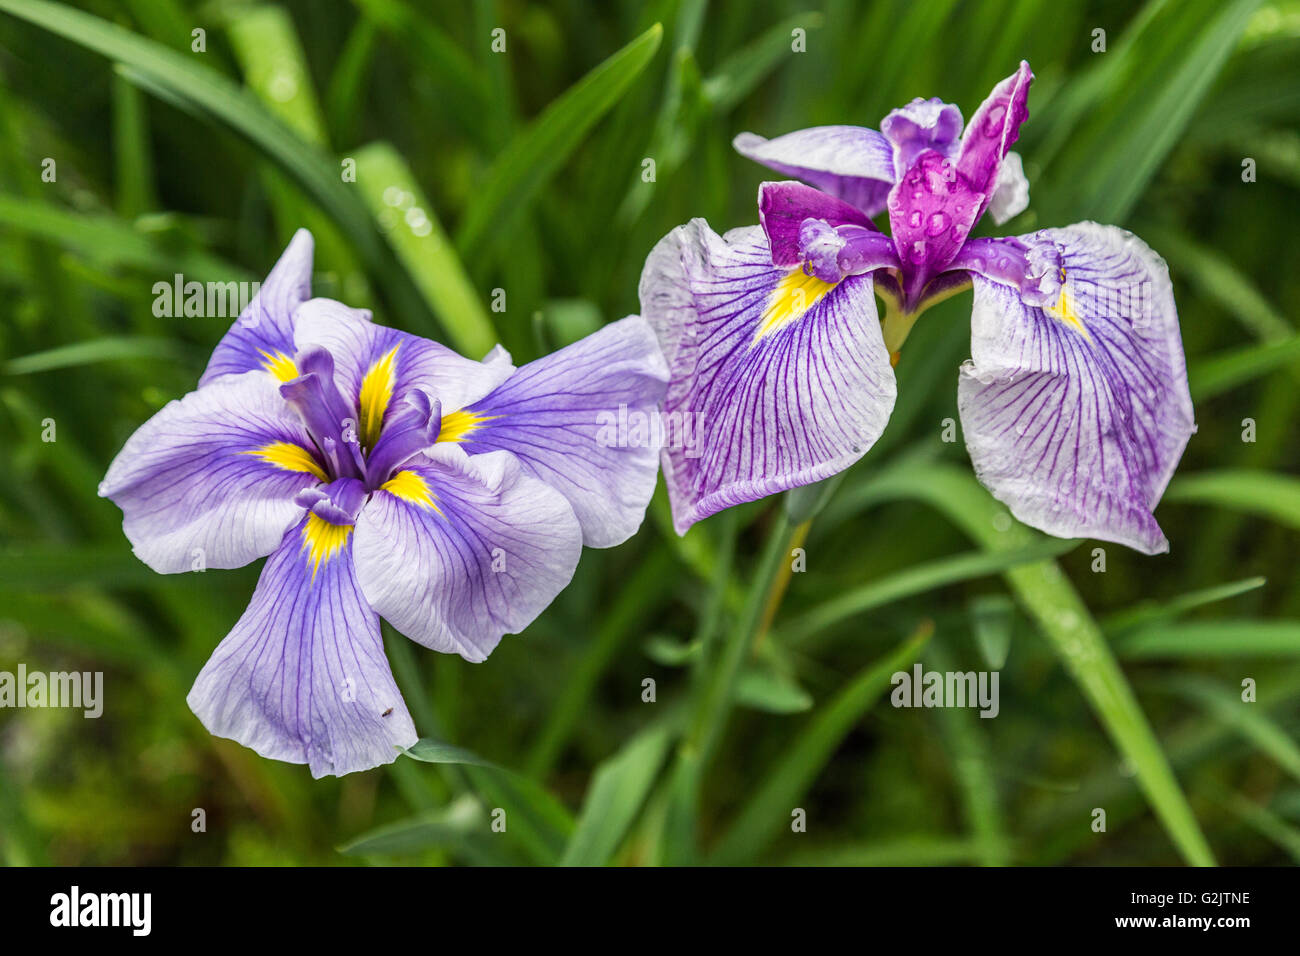 Japanese iris usually refers to three species of Iris - iris ayame or iris sanguinea, kakitsubata or iris laevigata or hanashobu Stock Photo